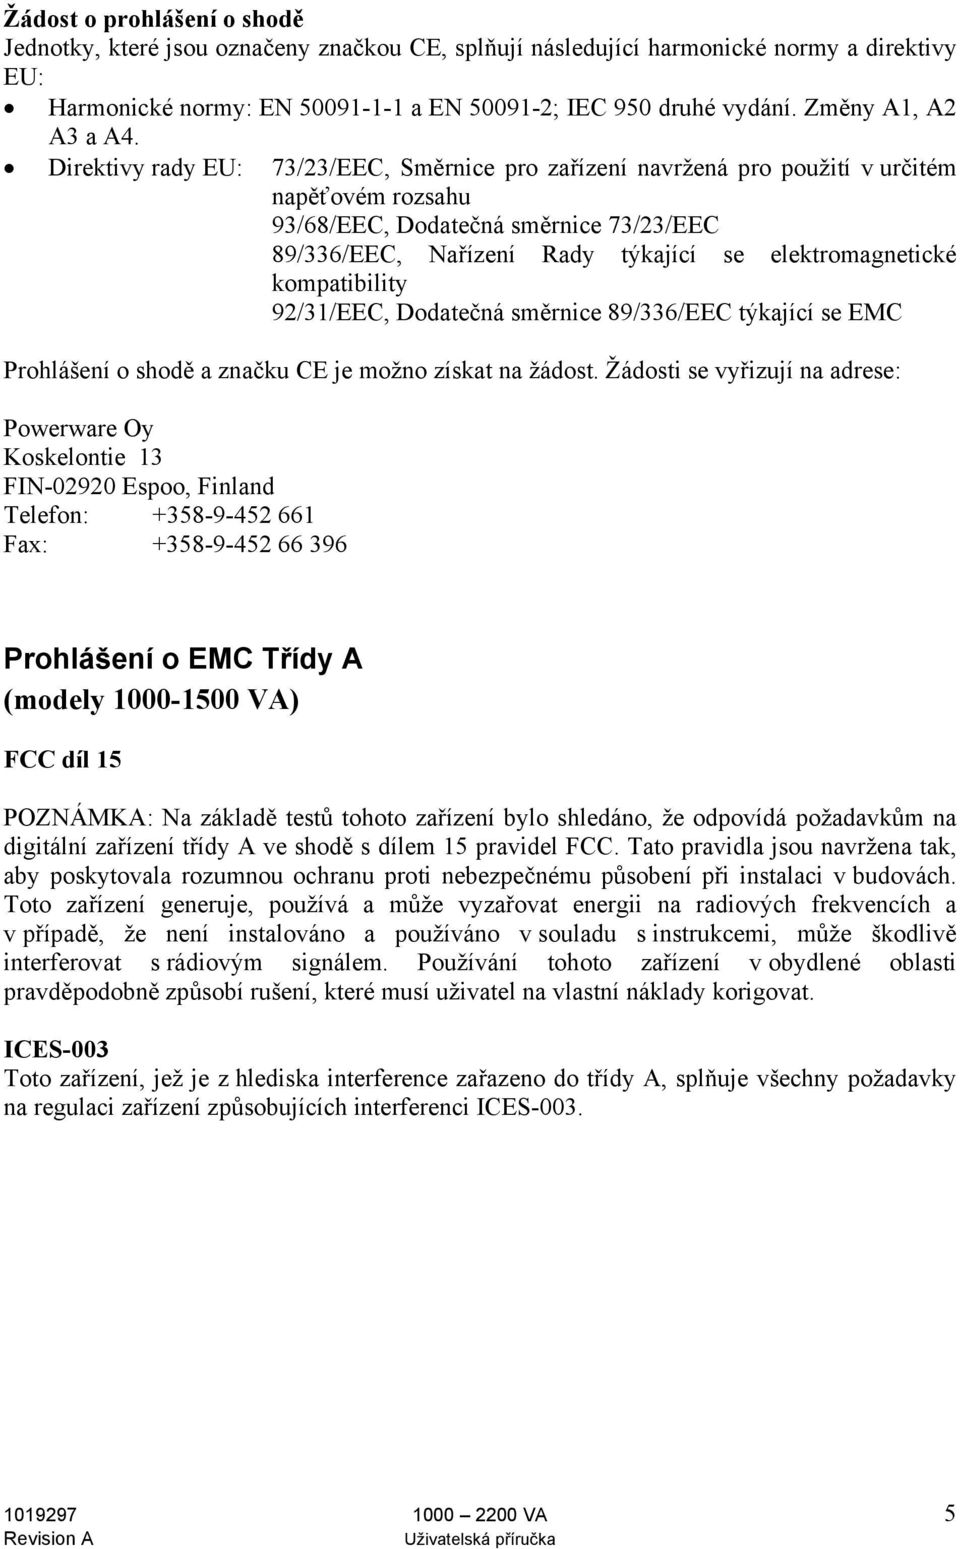 Direktivy rady EU: 73/23/EEC, Směrnice pro zařízení navržená pro použití v určitém napěťovém rozsahu 93/68/EEC, Dodatečná směrnice 73/23/EEC 89/336/EEC, Nařízení Rady týkající se elektromagnetické